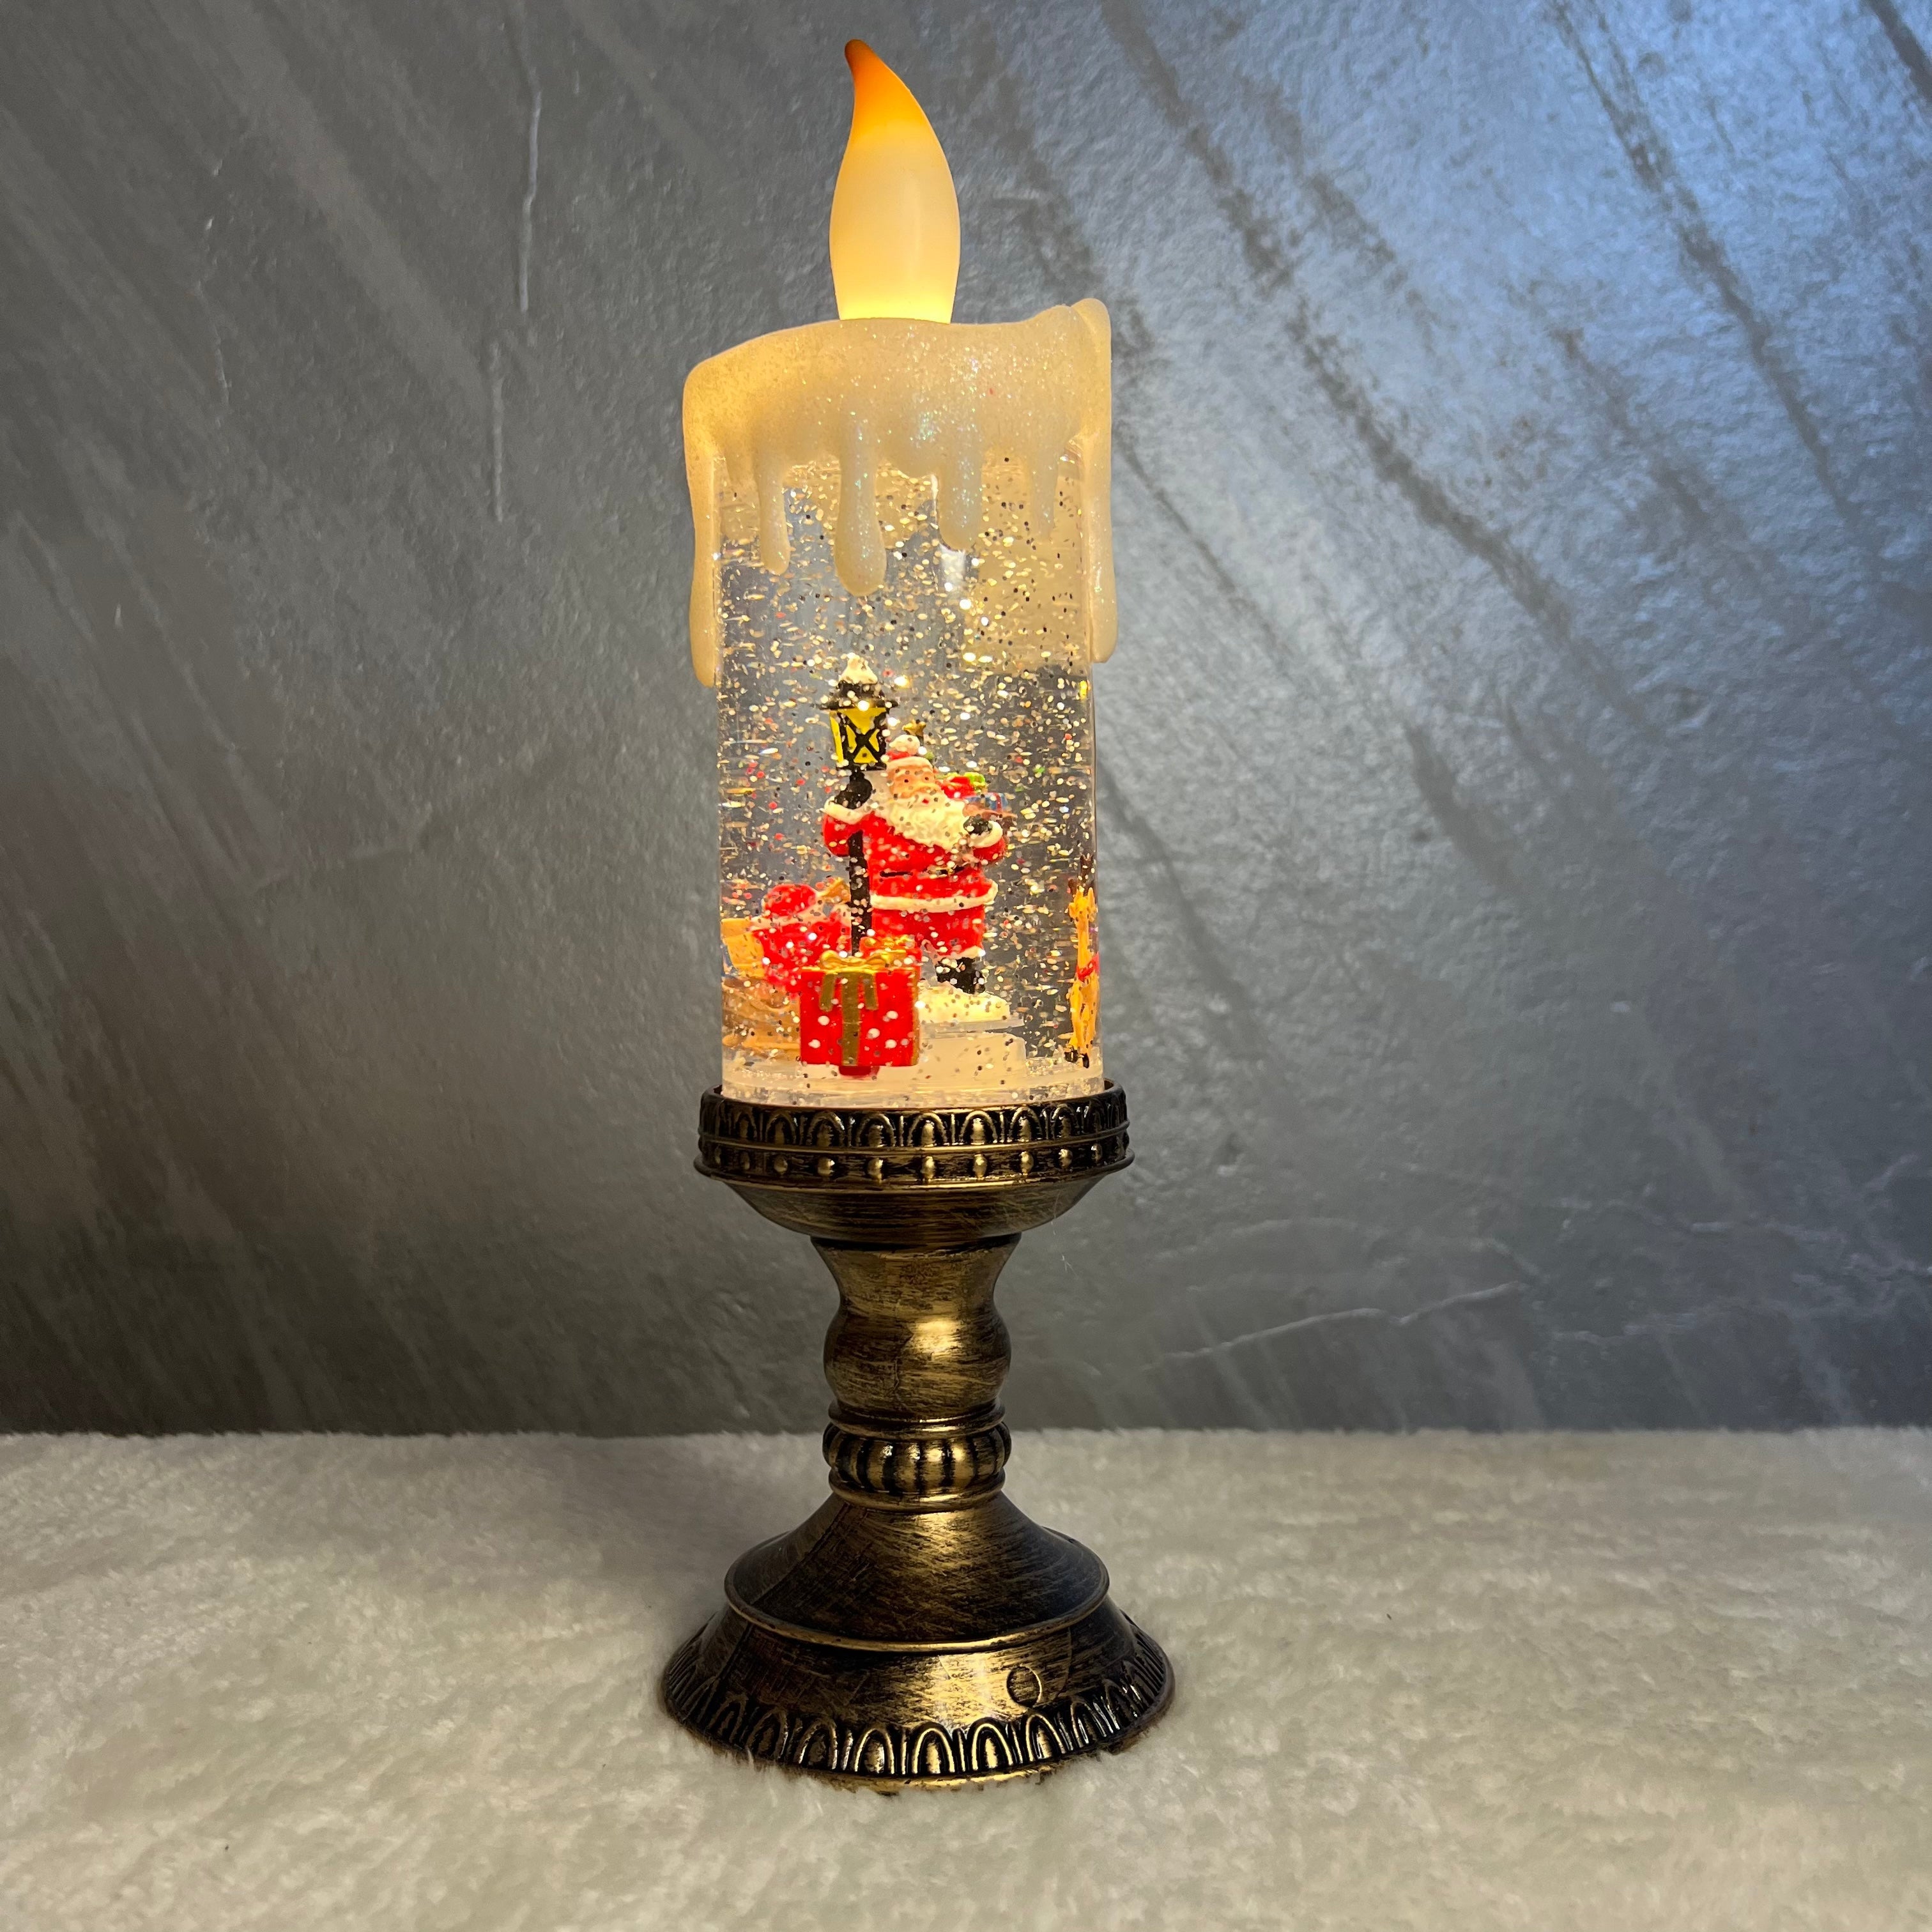 Interaktivna novogodišnja sveća deda mraz, velika, 33 cm